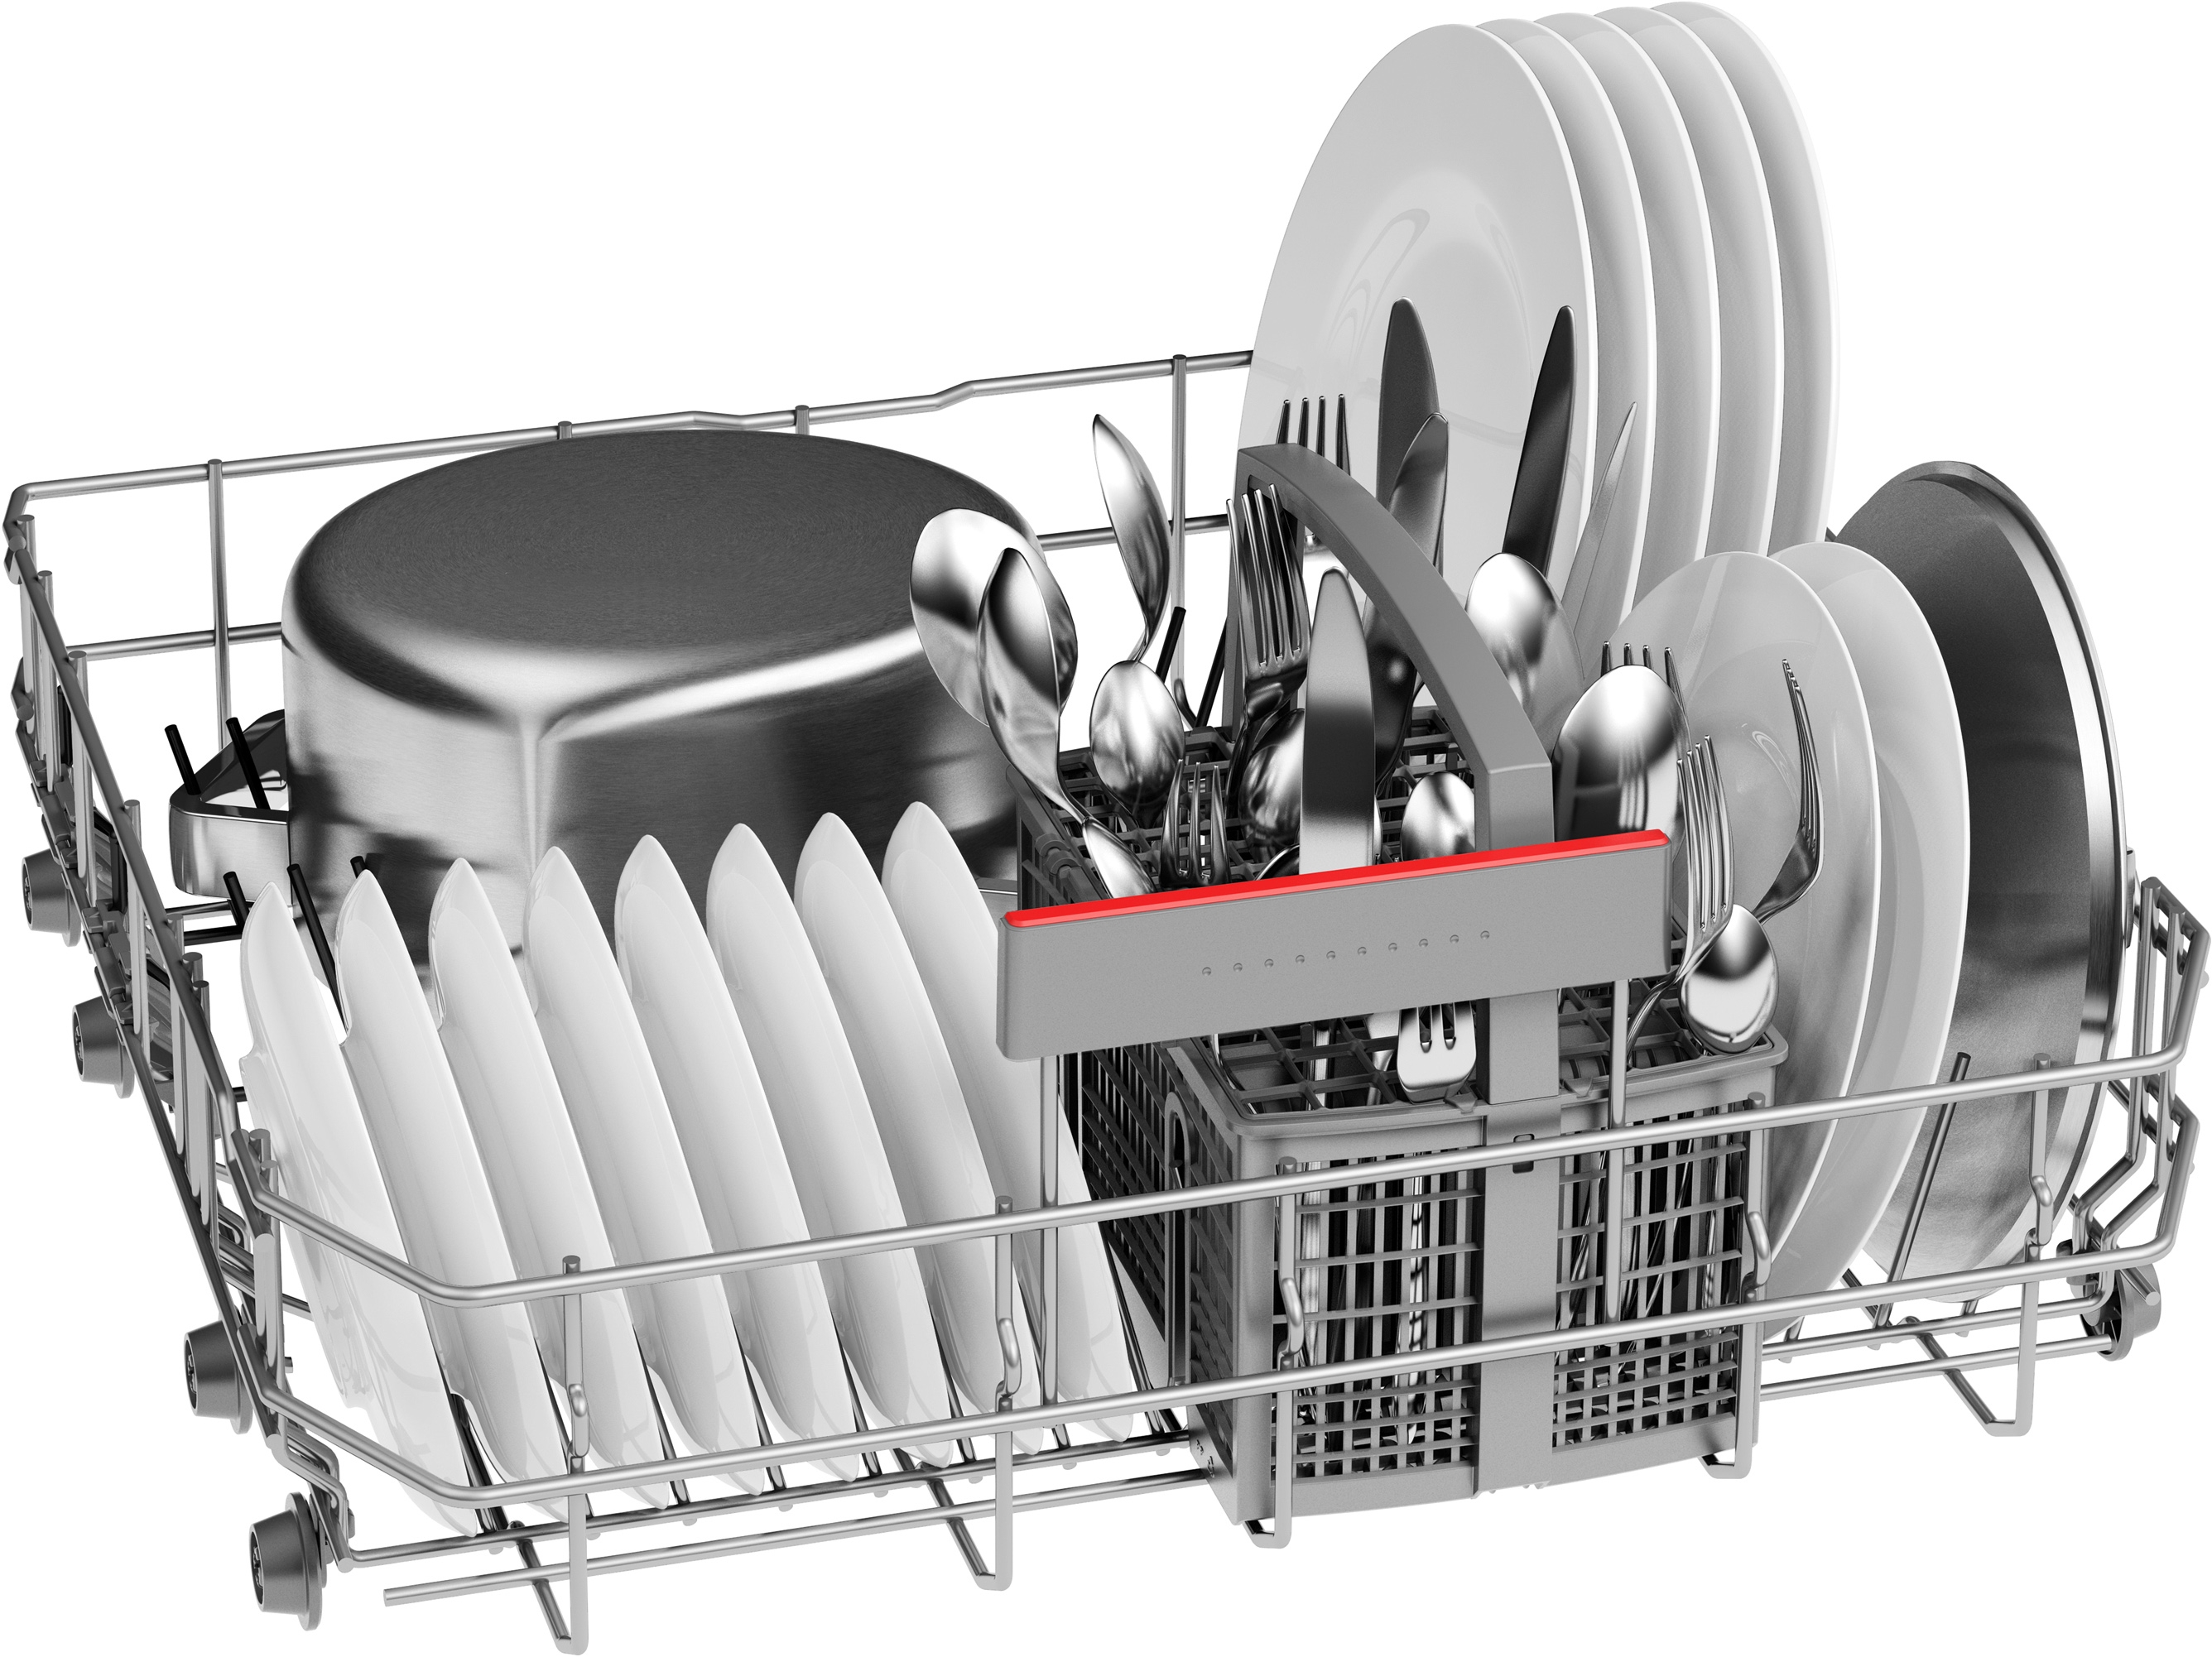 Serija 4, Samostojeća mašina za pranje sudova, 60 cm, Bela, SMS4HNW01E